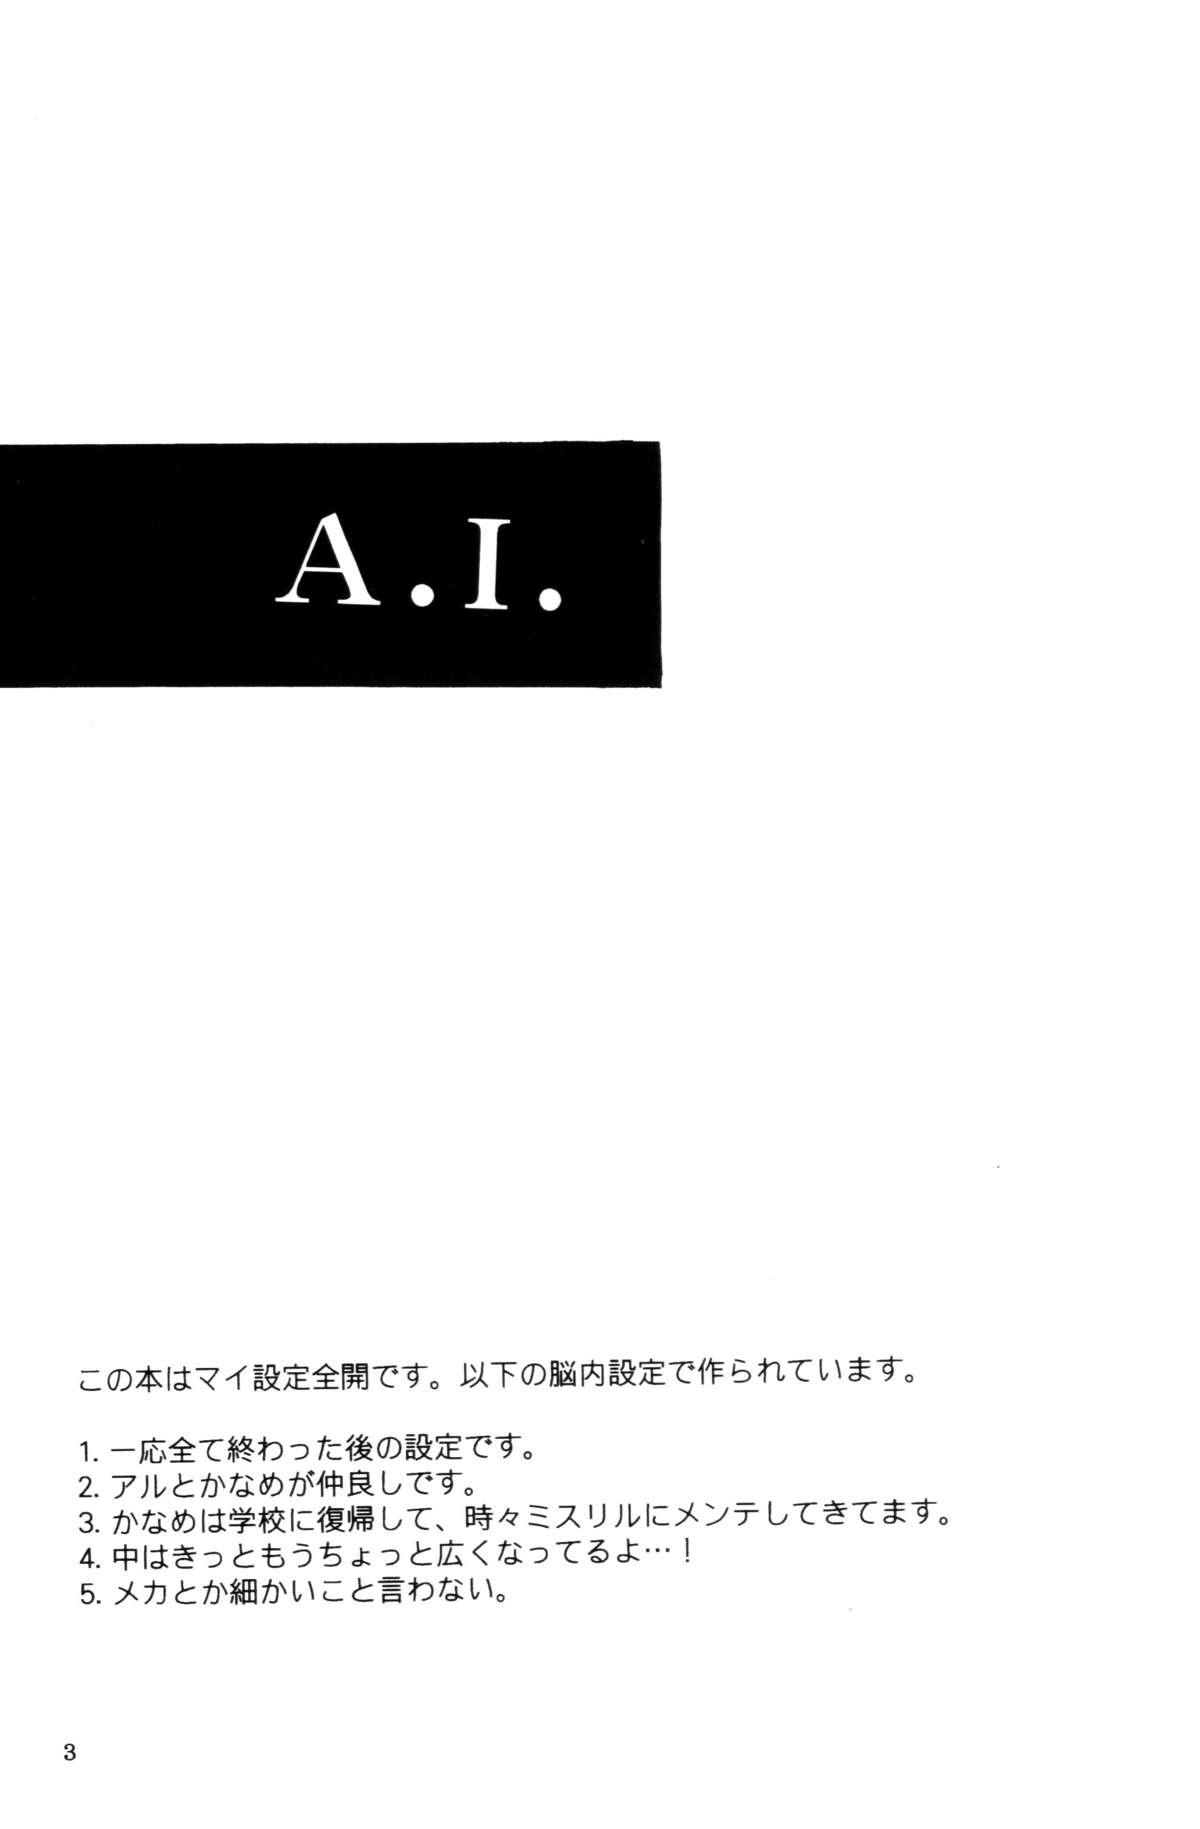 A.I. 1